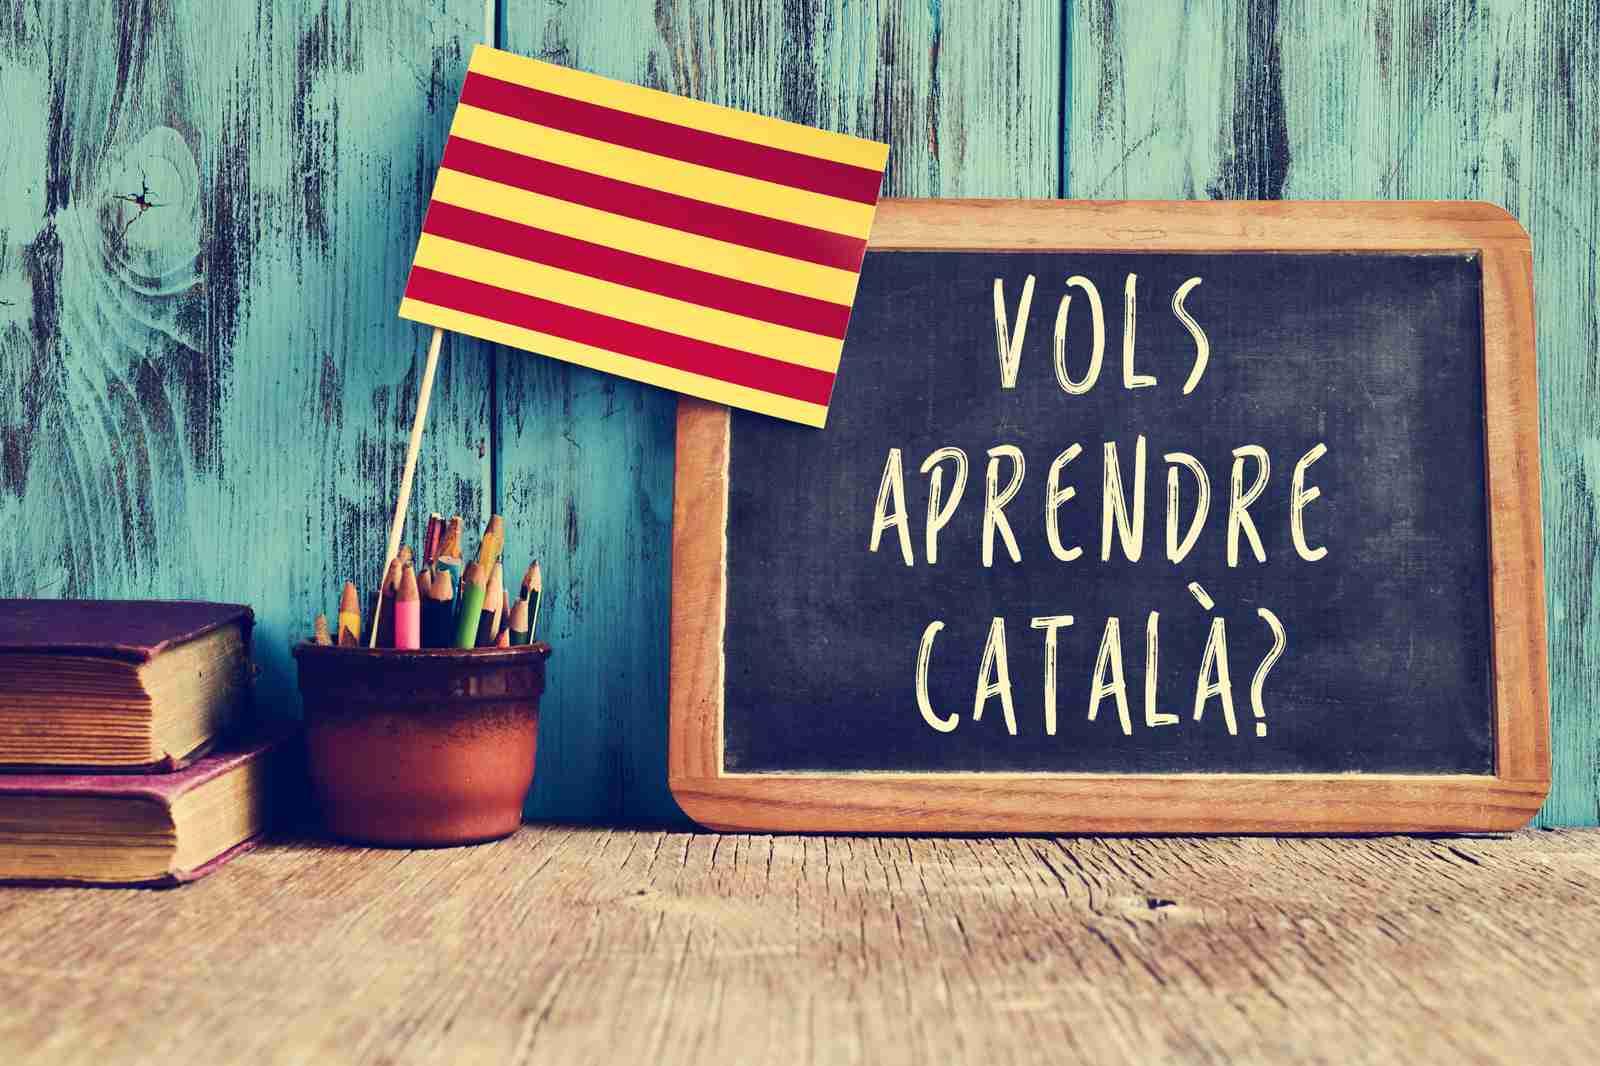 MARSYAS 2: Il catalano : una lingua con una storia, una lingua di